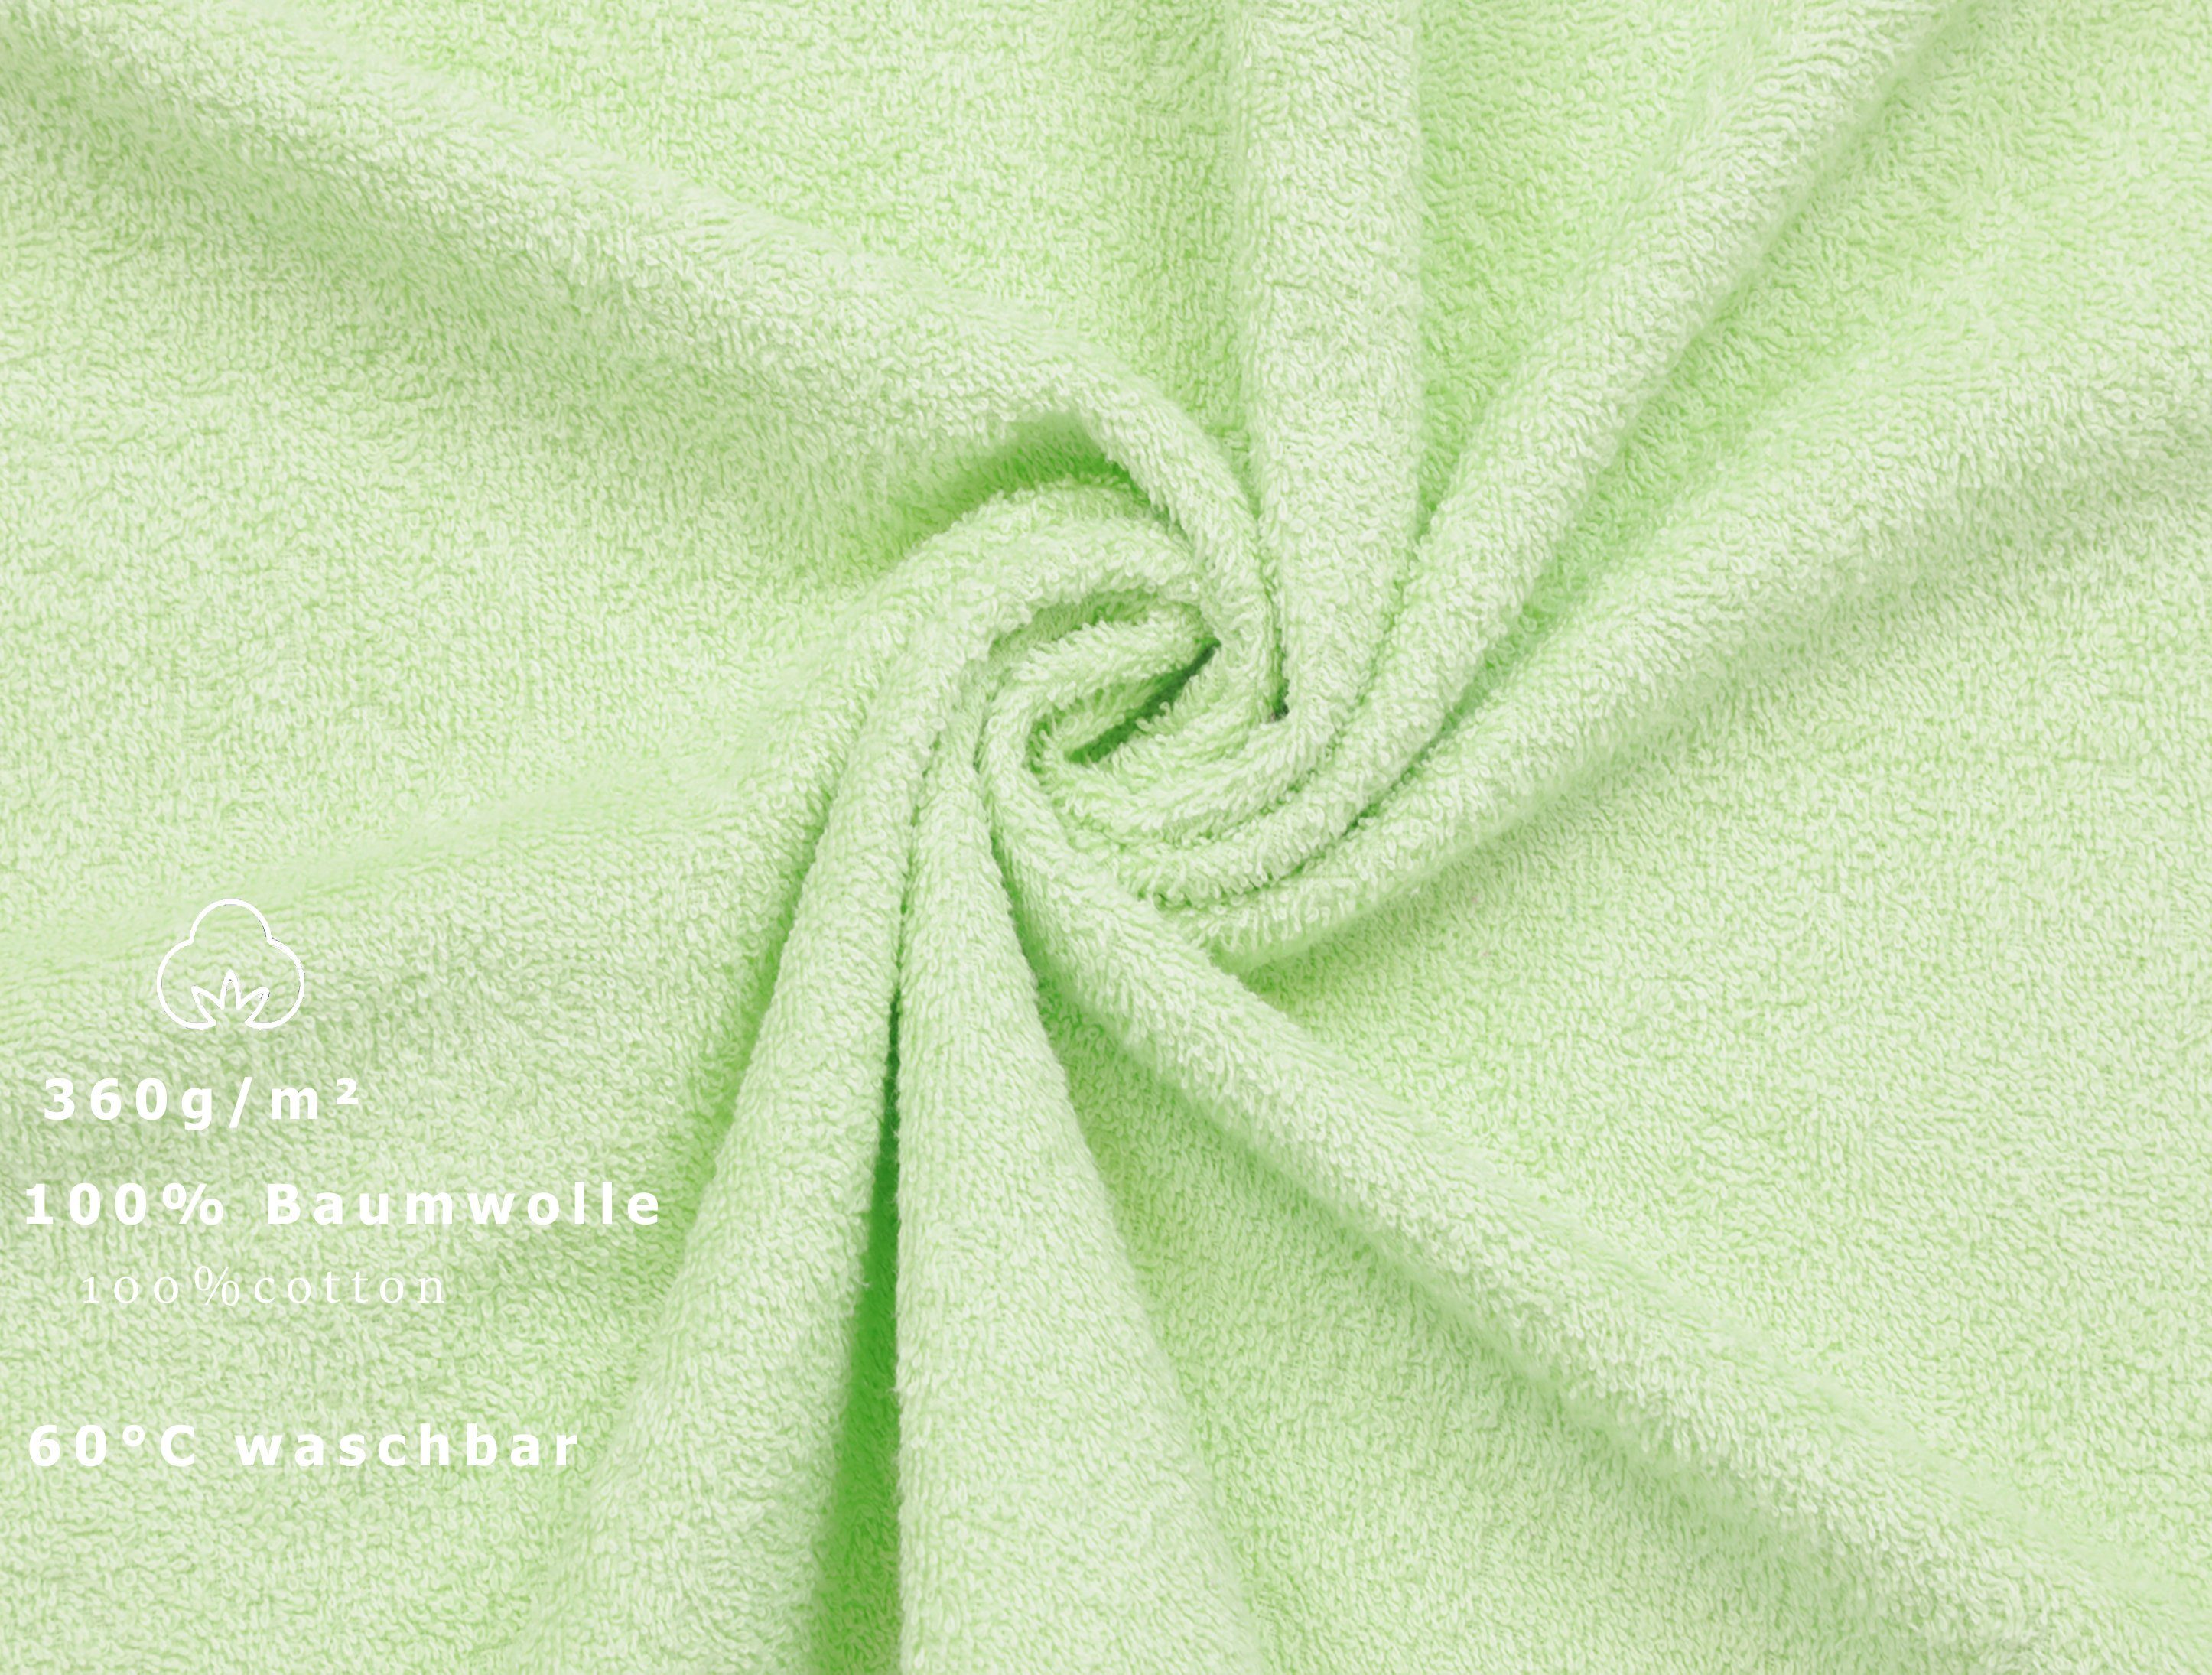 Betz Handtücher 6 50 Größe Baumwolle grün HandtücherPalermo und 100 rosé, Stück 100% x cm Farbe